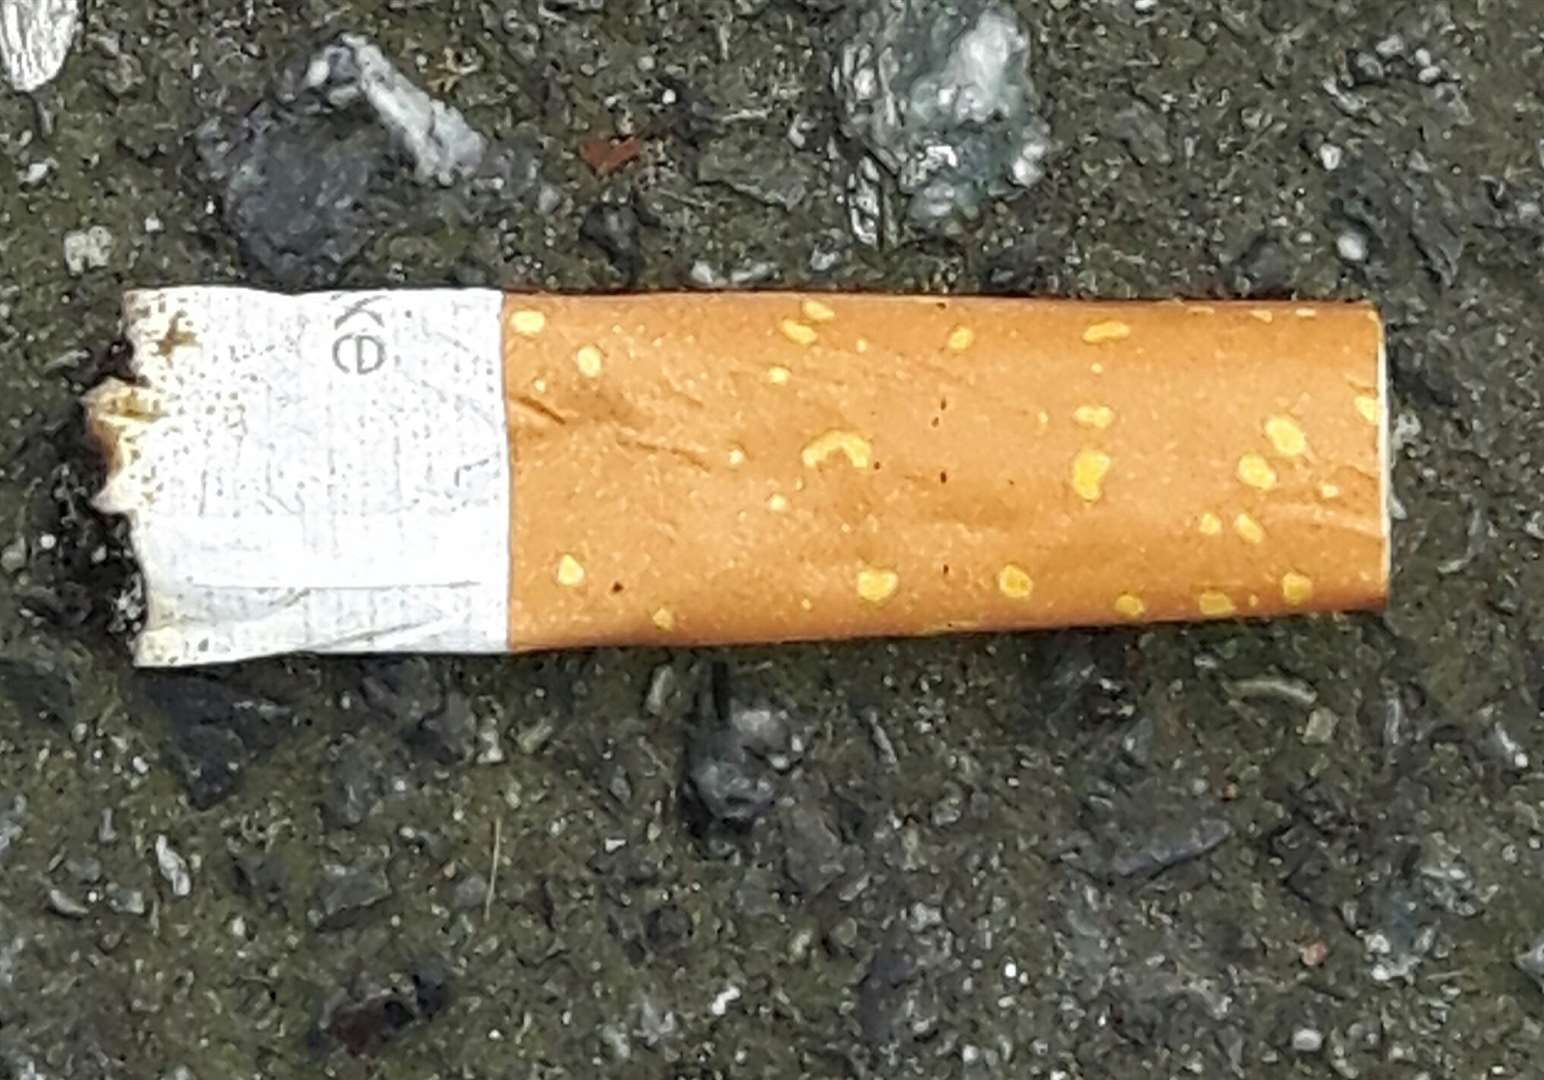 Cigarette butt. Stock image (8763564)